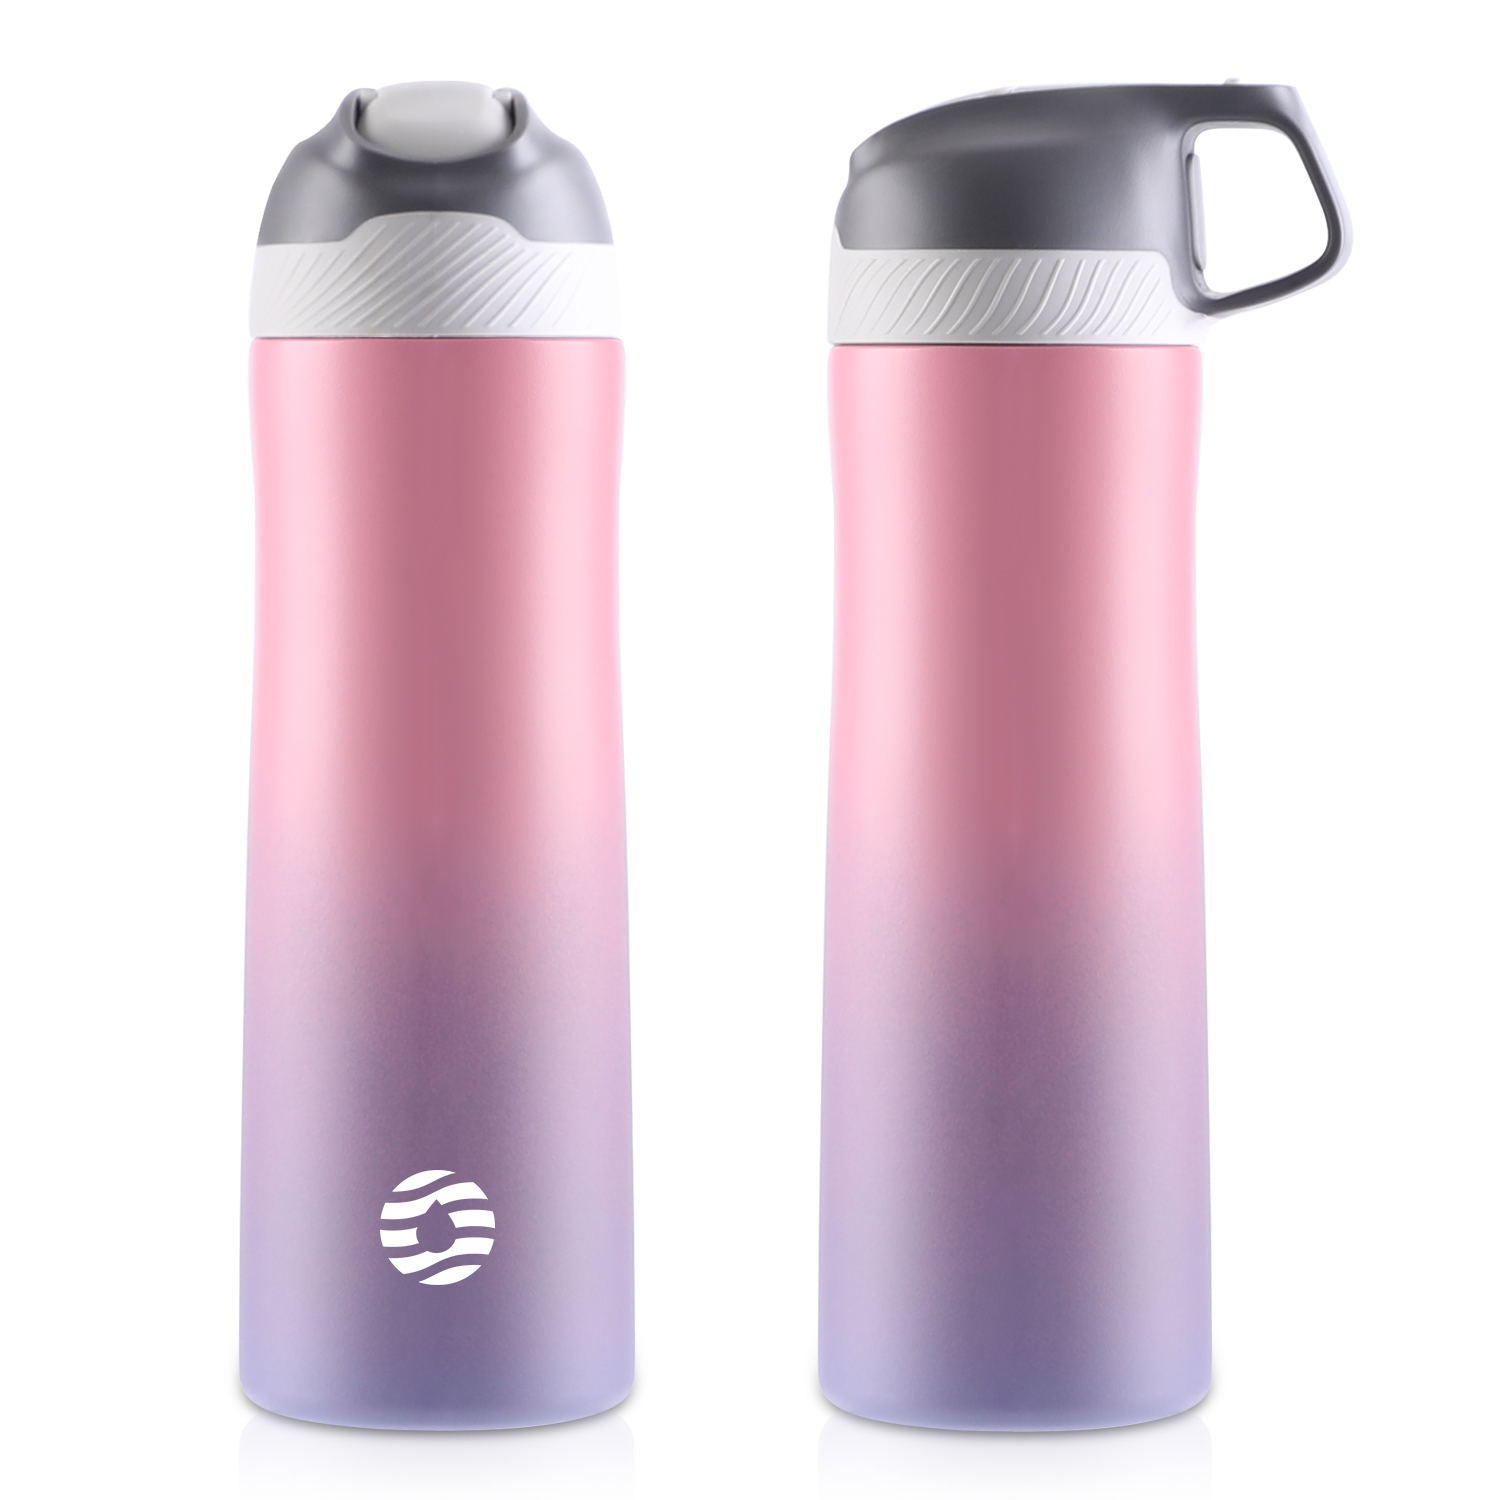 Das Bild zeigt zwei pinke Edelstahl-Thermosflaschen mit einem Farbverlauf von pink zu lila, eine mit geschlossenem und eine mit integriertem Griff im Deckel.